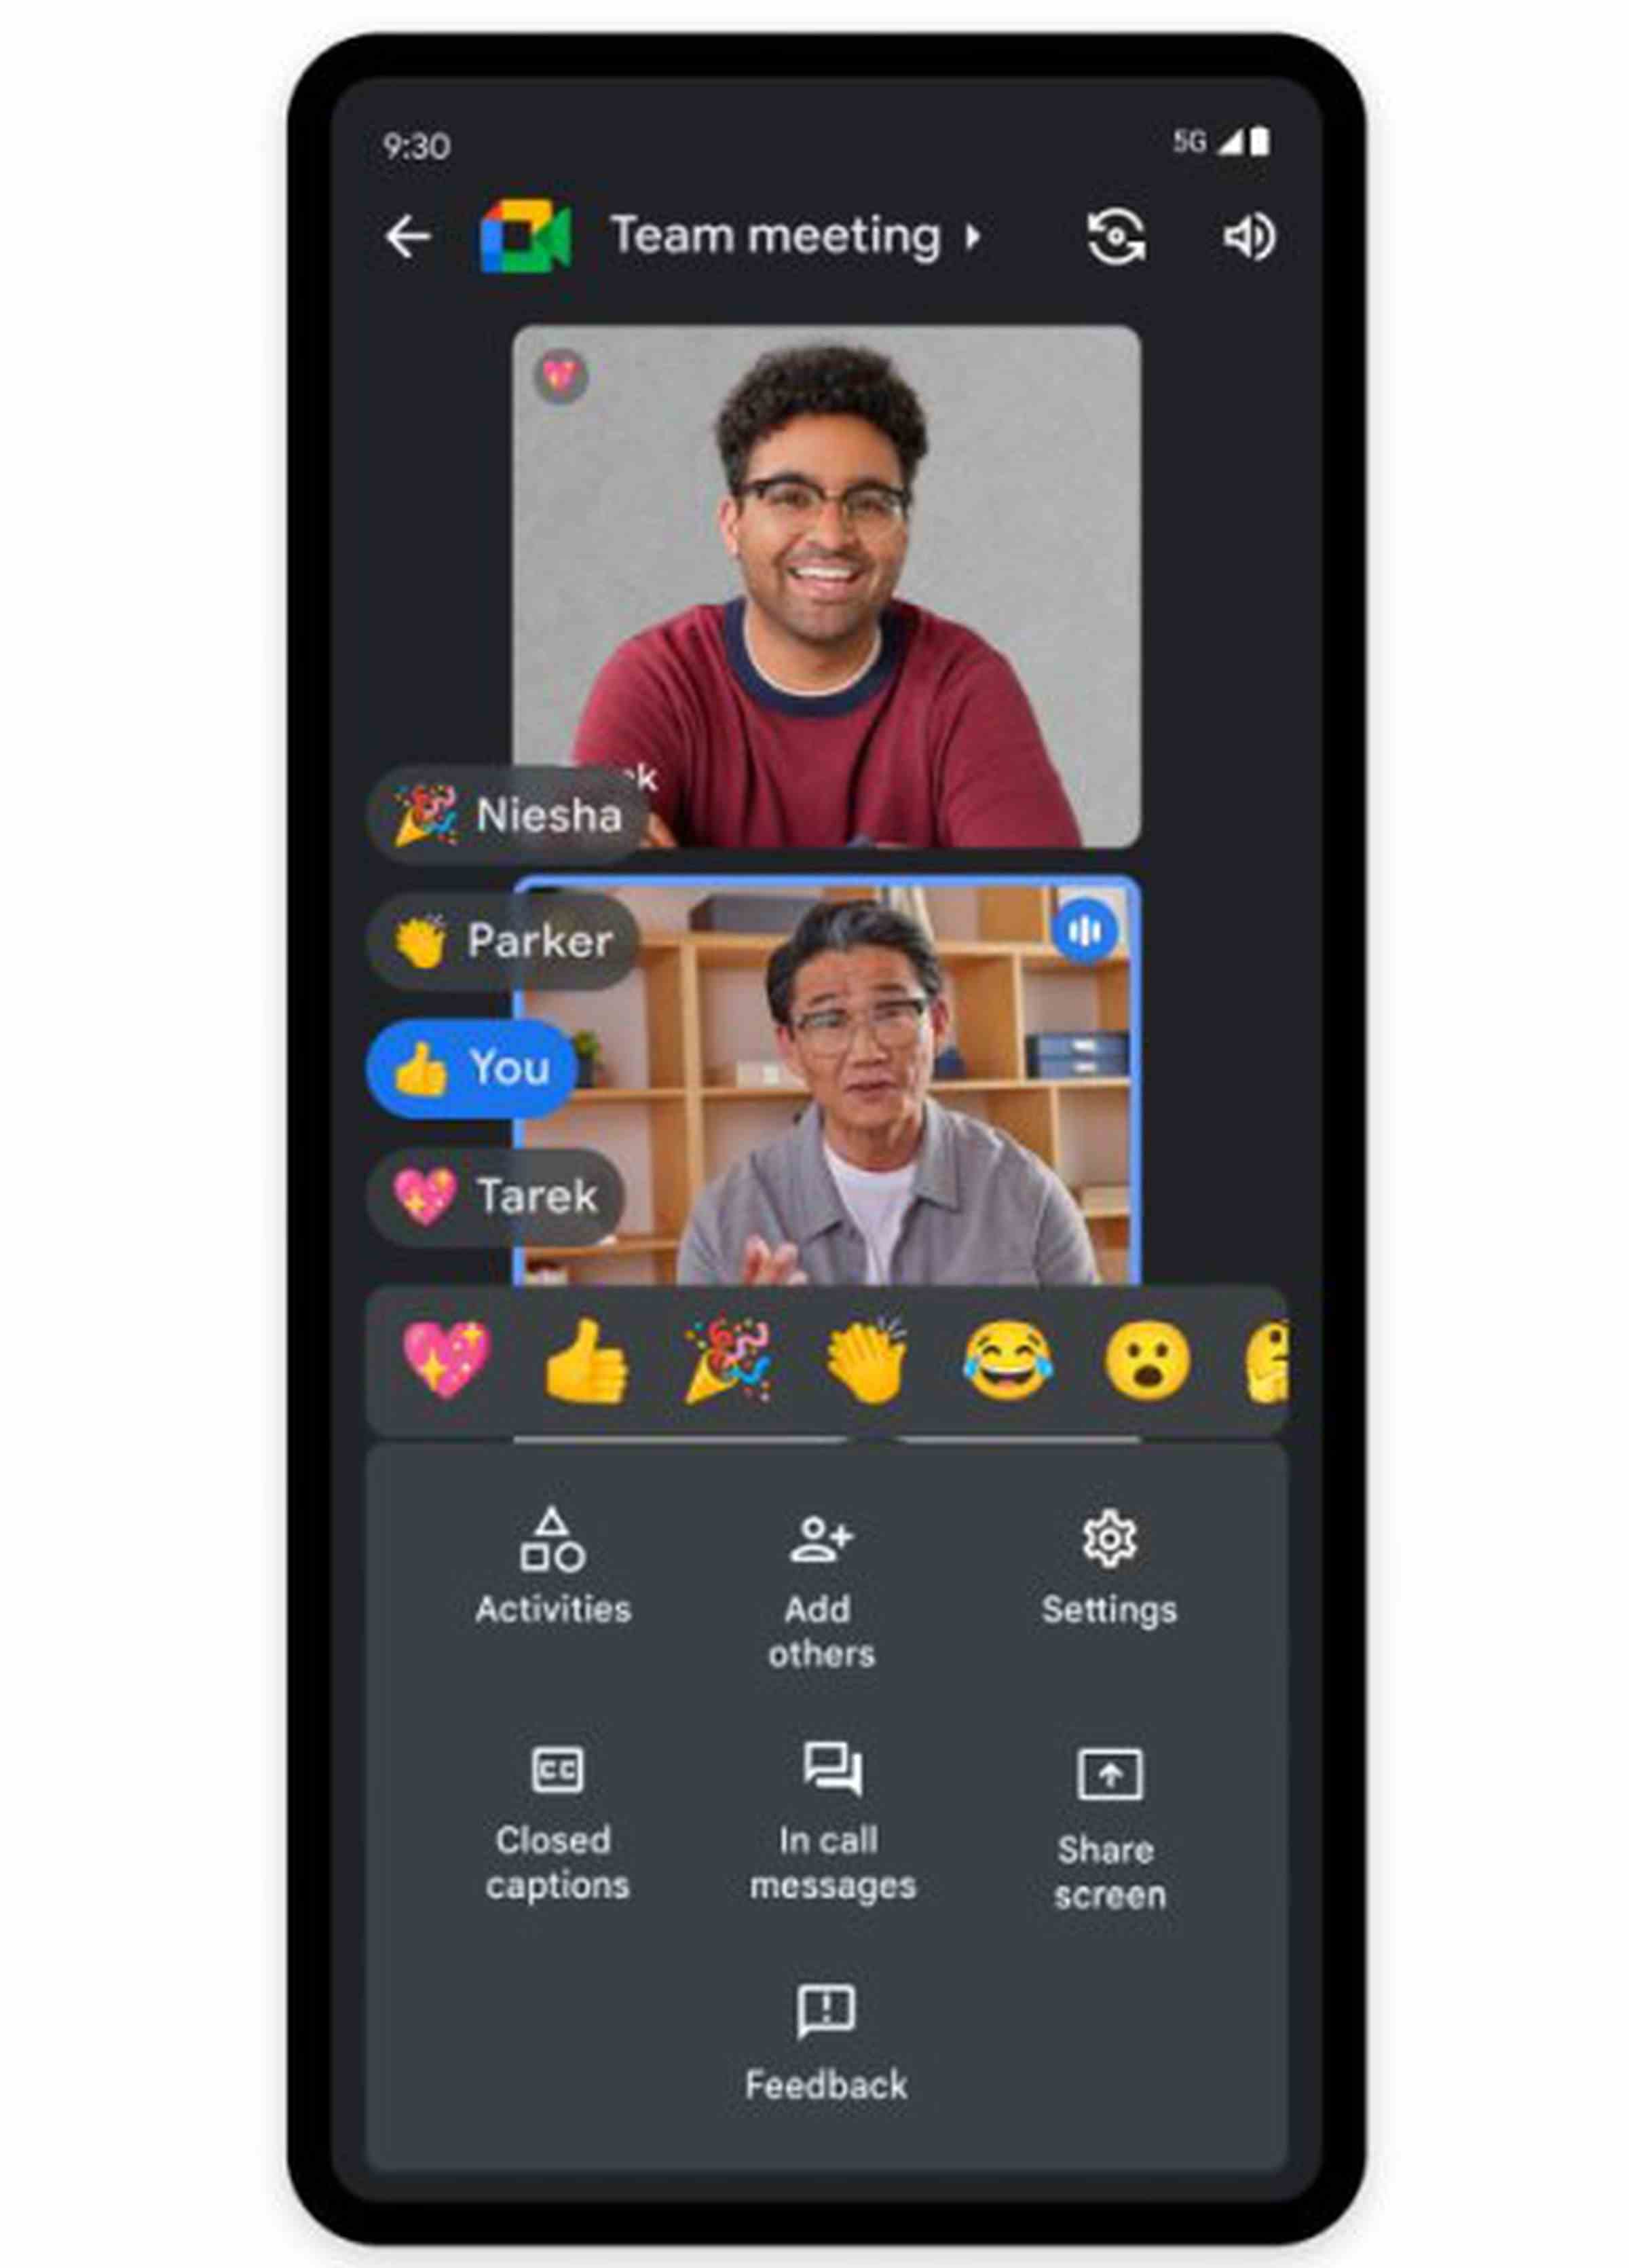 Resimde, iki kişinin bir Google Meet görüntülü sohbet görüşmesinde olduğu, başparmak yukarıya, ışıltılı kalp veya alkış gibi çeşitli emoji tepkileriyle simüle edilmiş bir telefon ekranı gösterilmektedir.